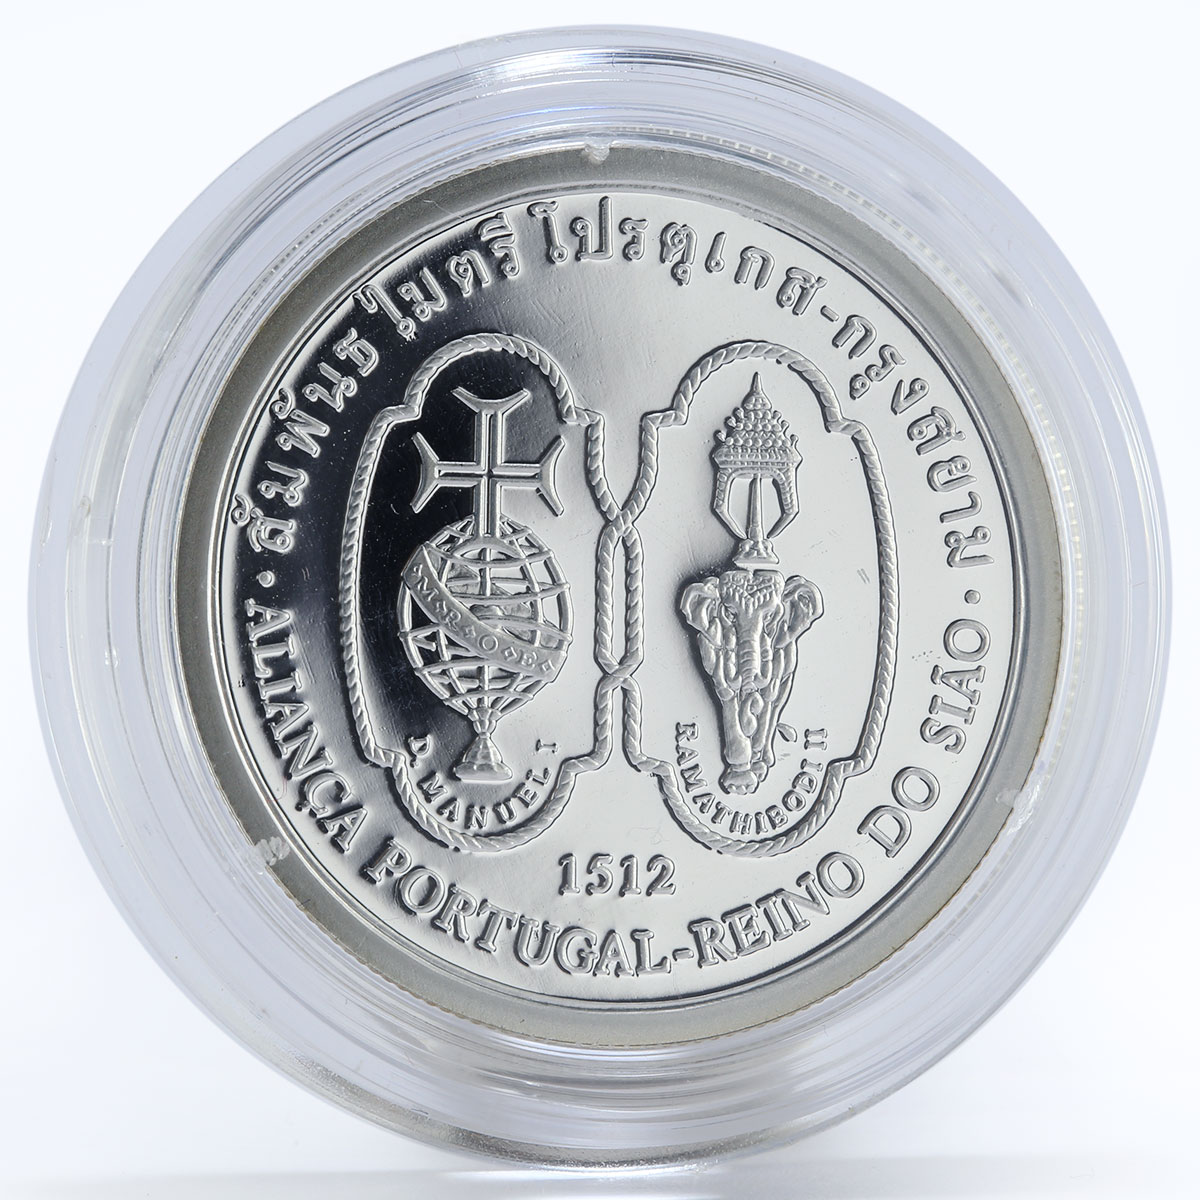 Portugal 200 escudos  Siam Alliance, Ship, proof silver coin 1996